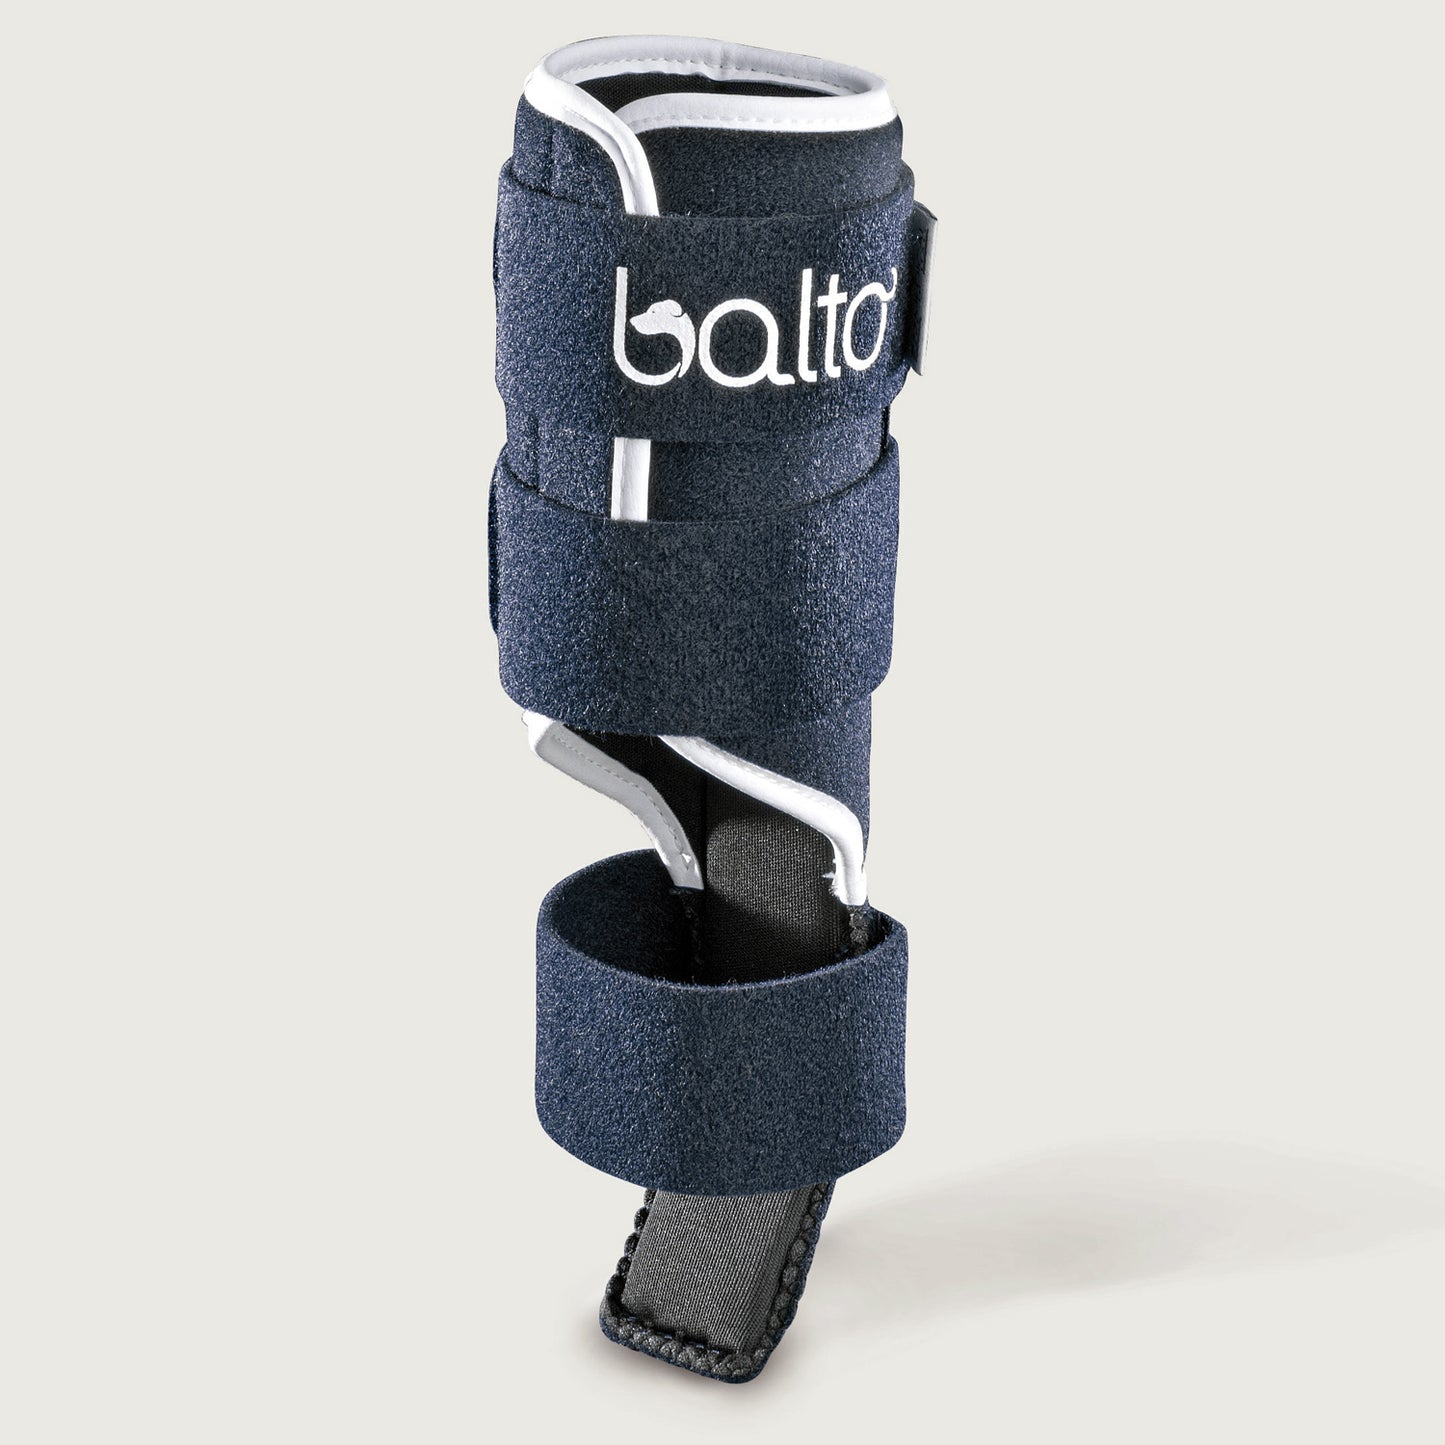 
                  
                    balto usa splint brace photo of product only
                  
                